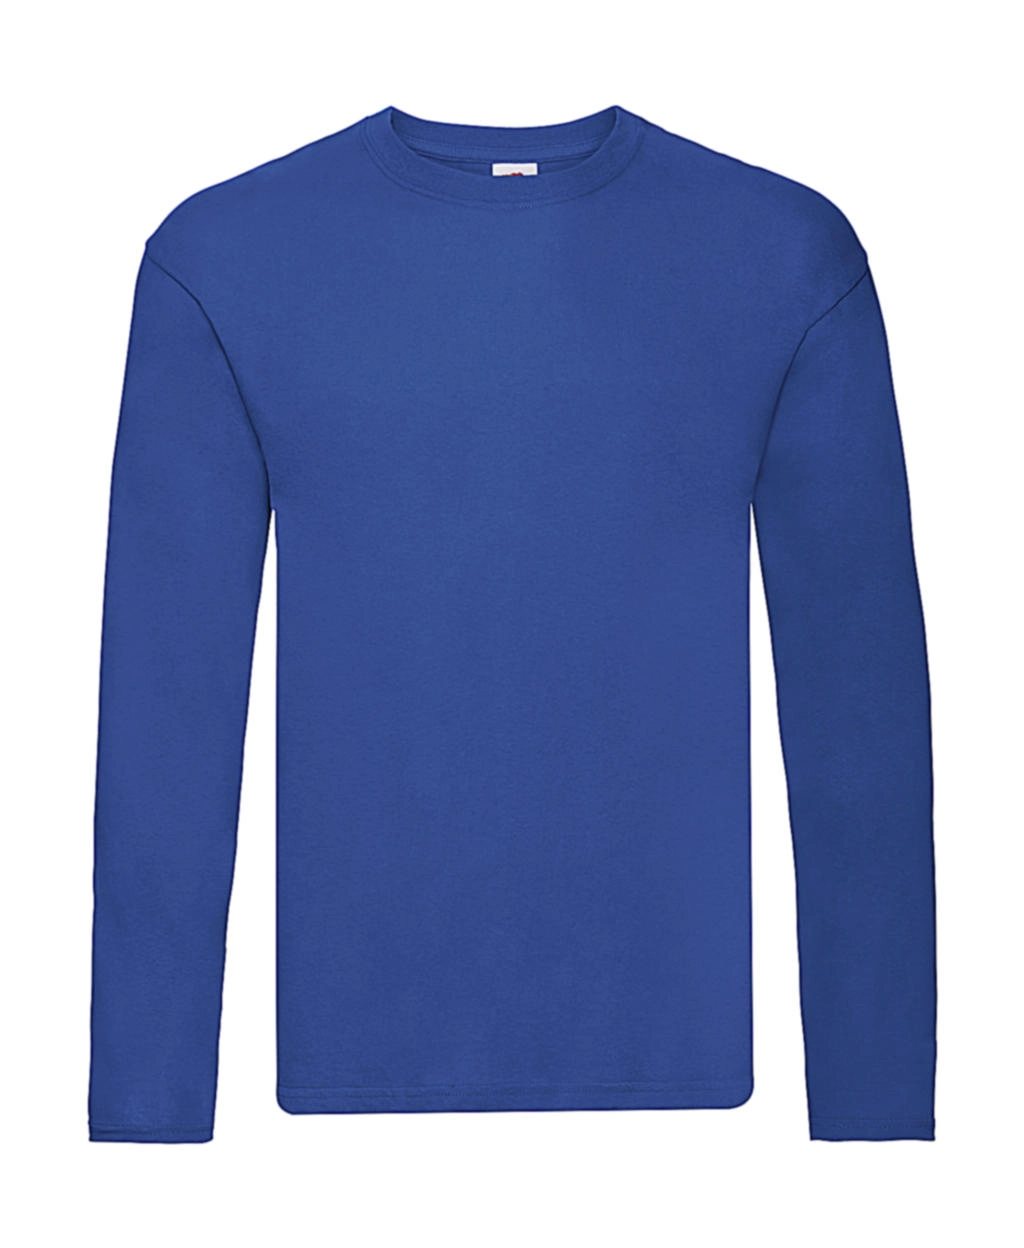 Original Long Sleeve T zum Besticken und Bedrucken in der Farbe Royal Blue mit Ihren Logo, Schriftzug oder Motiv.